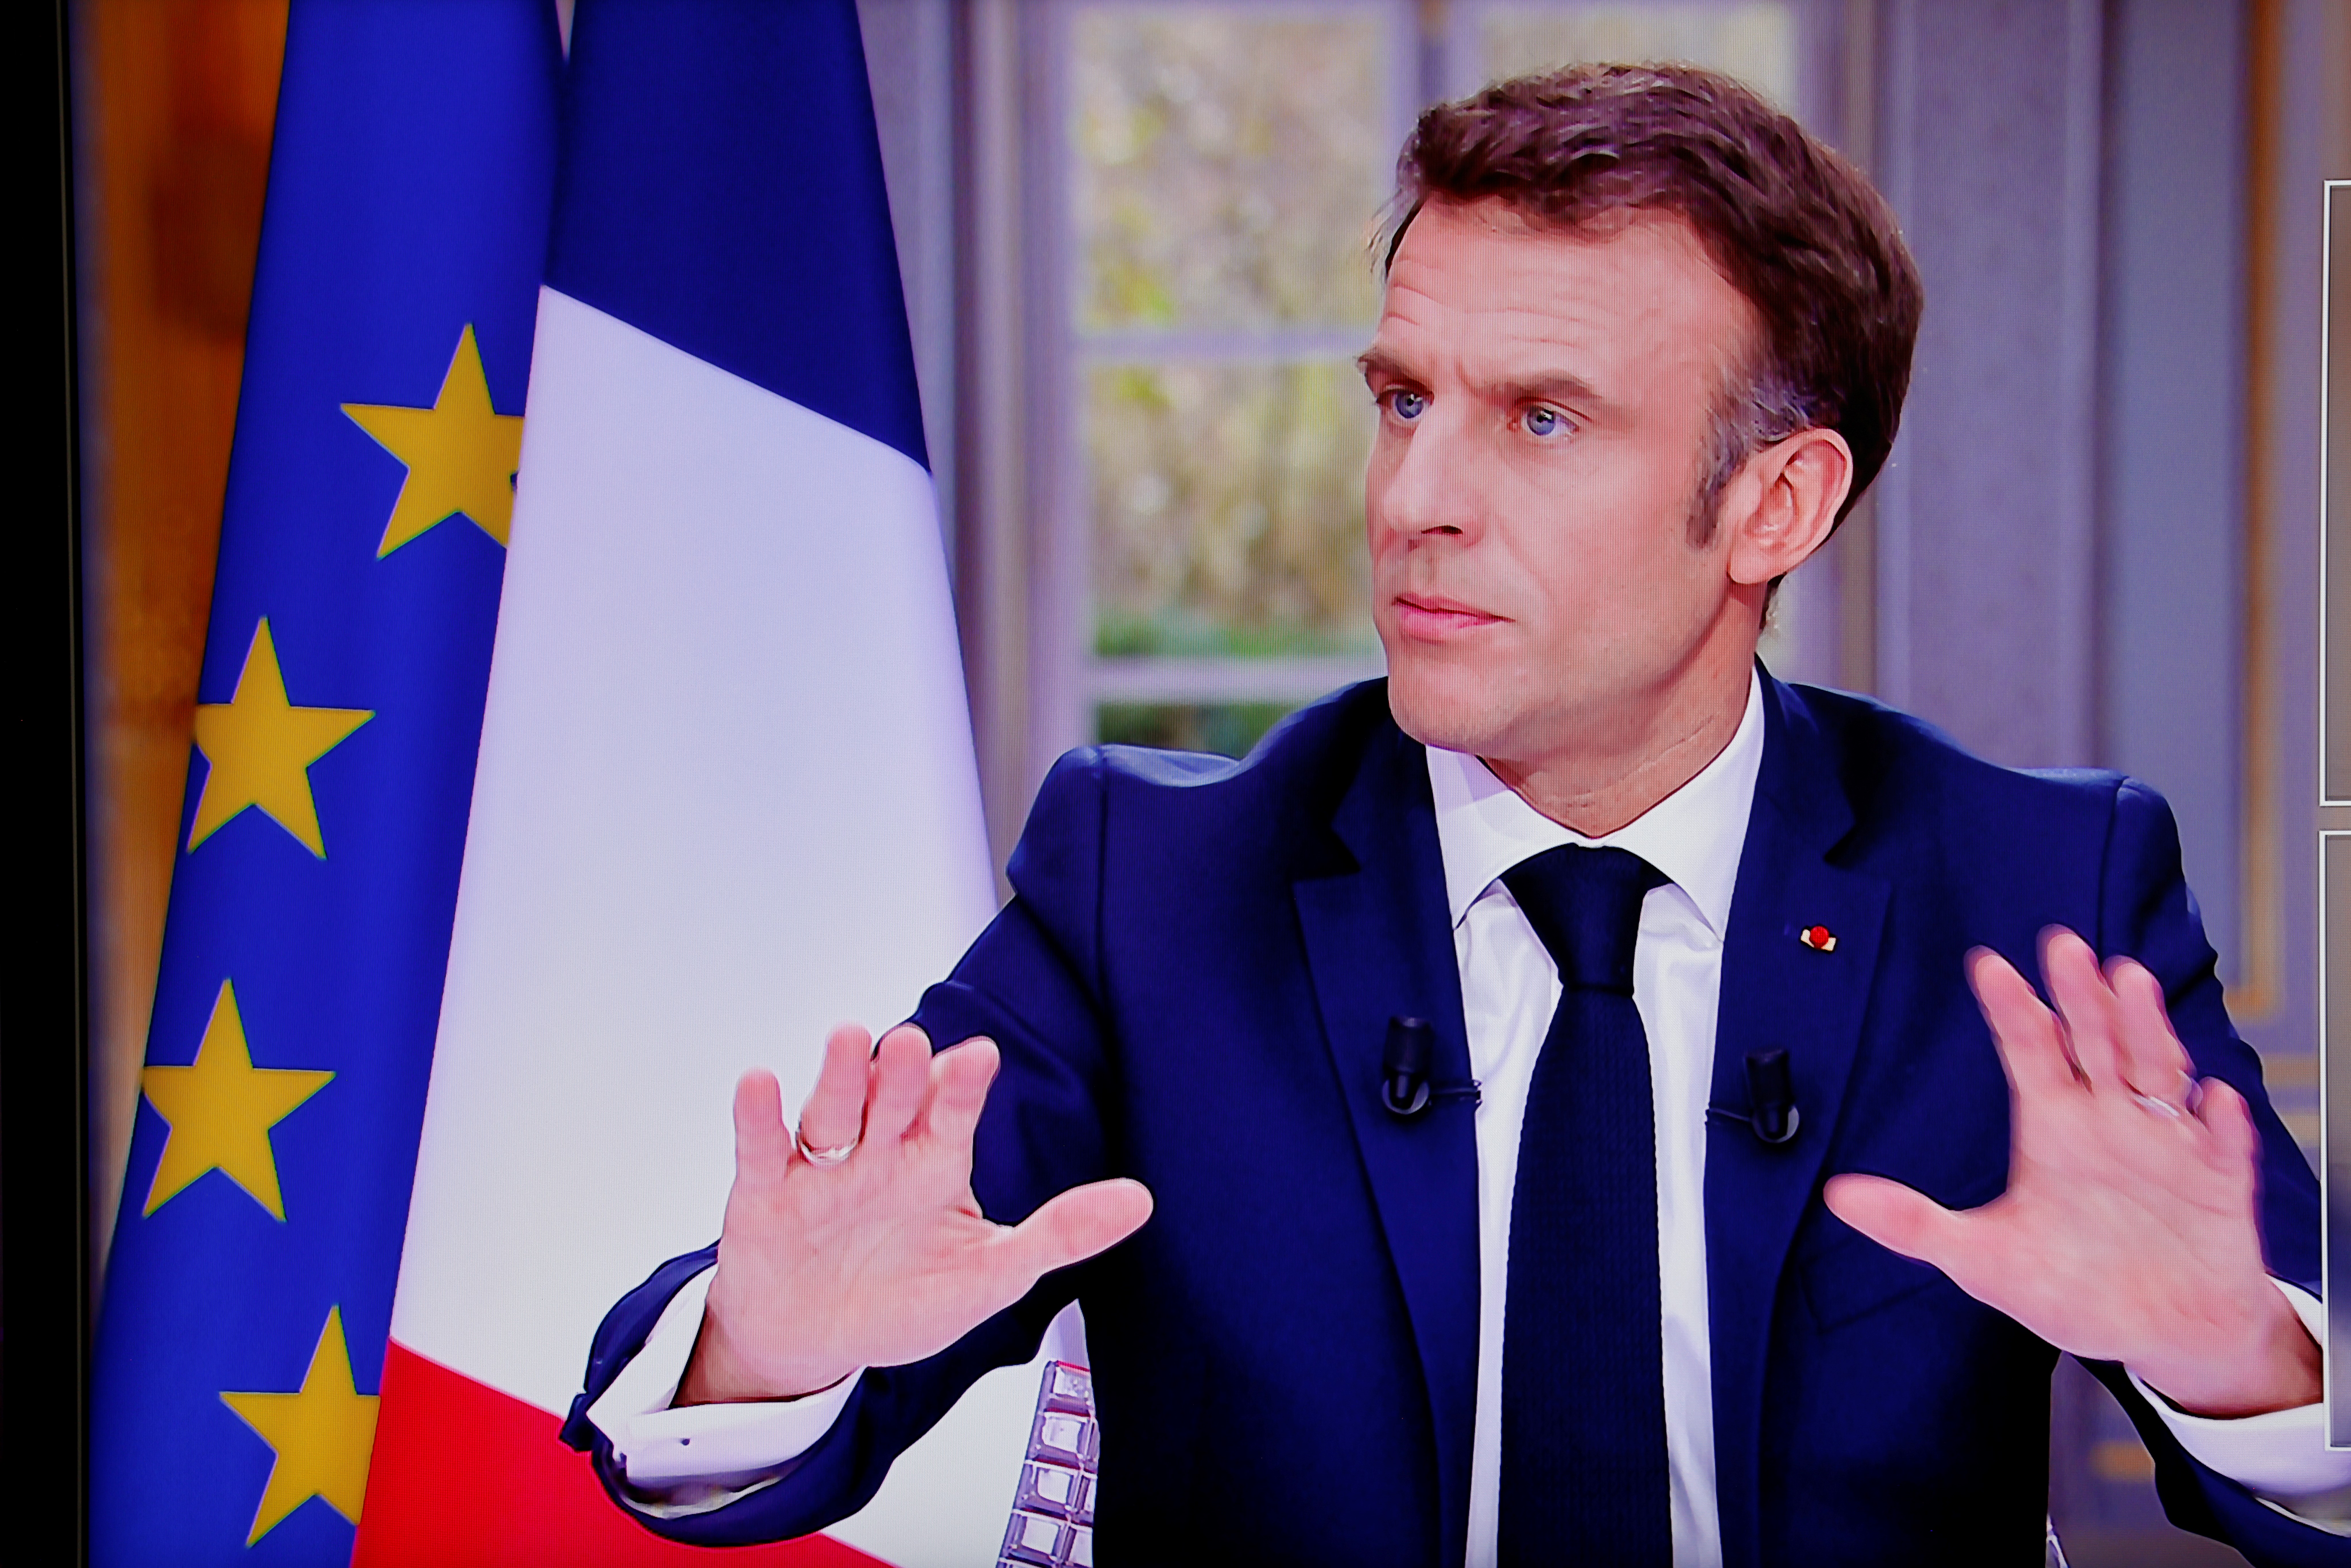 Macron persiste en su reforma de pensiones en Francia pese a protestas